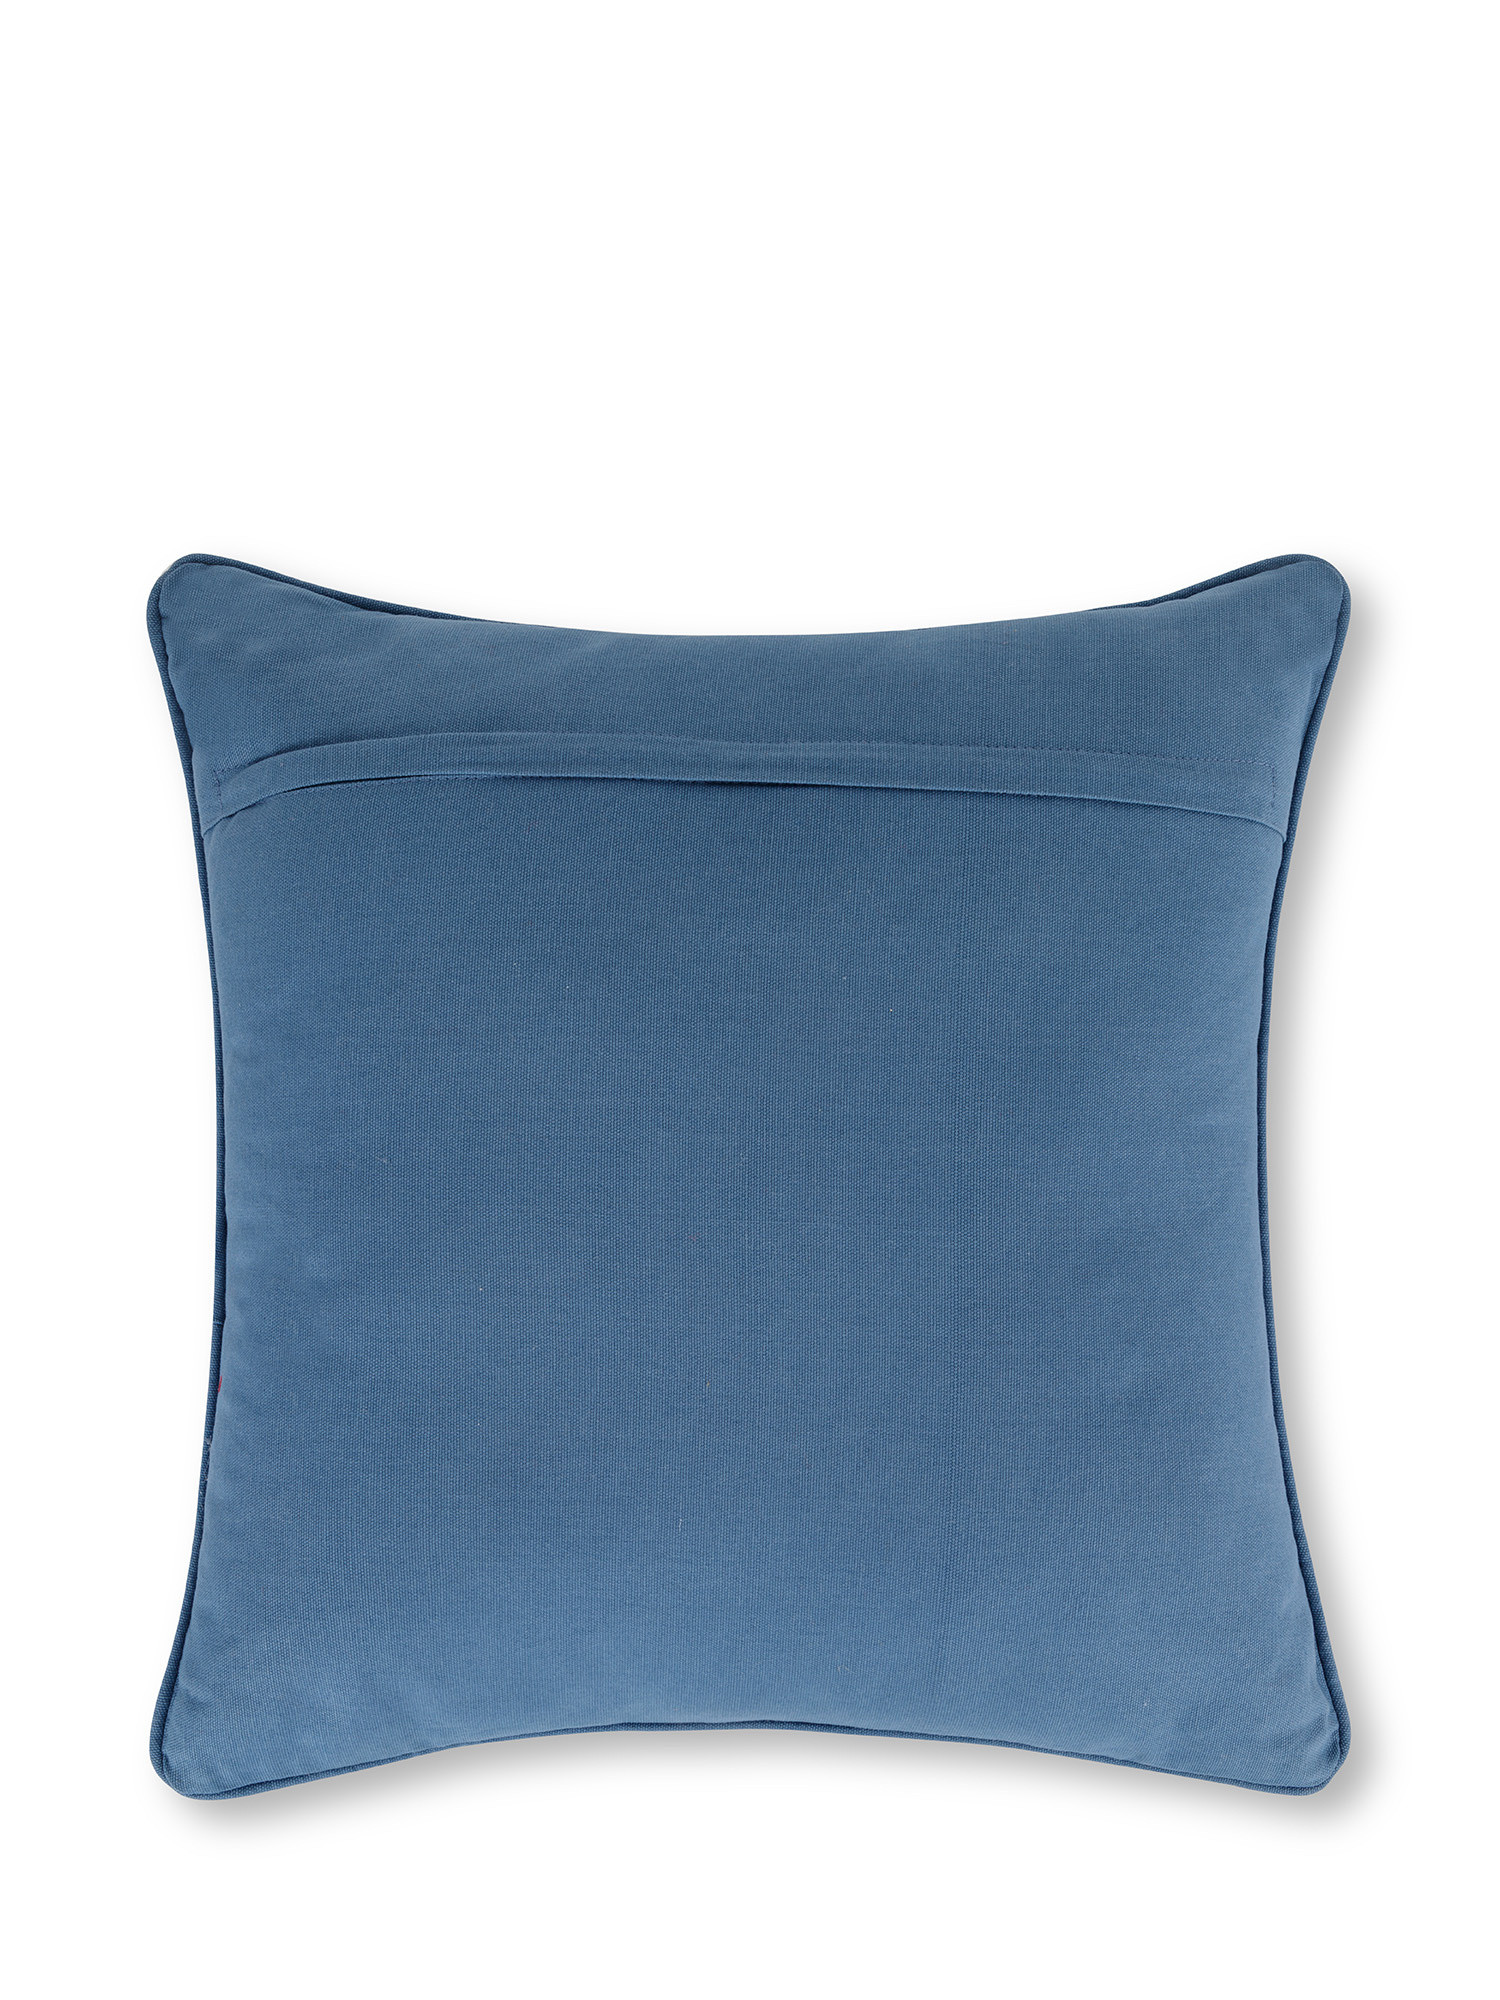 Cuscino ricamato pattini da ghiaccio 45x45 cm, Azzurro, large image number 1